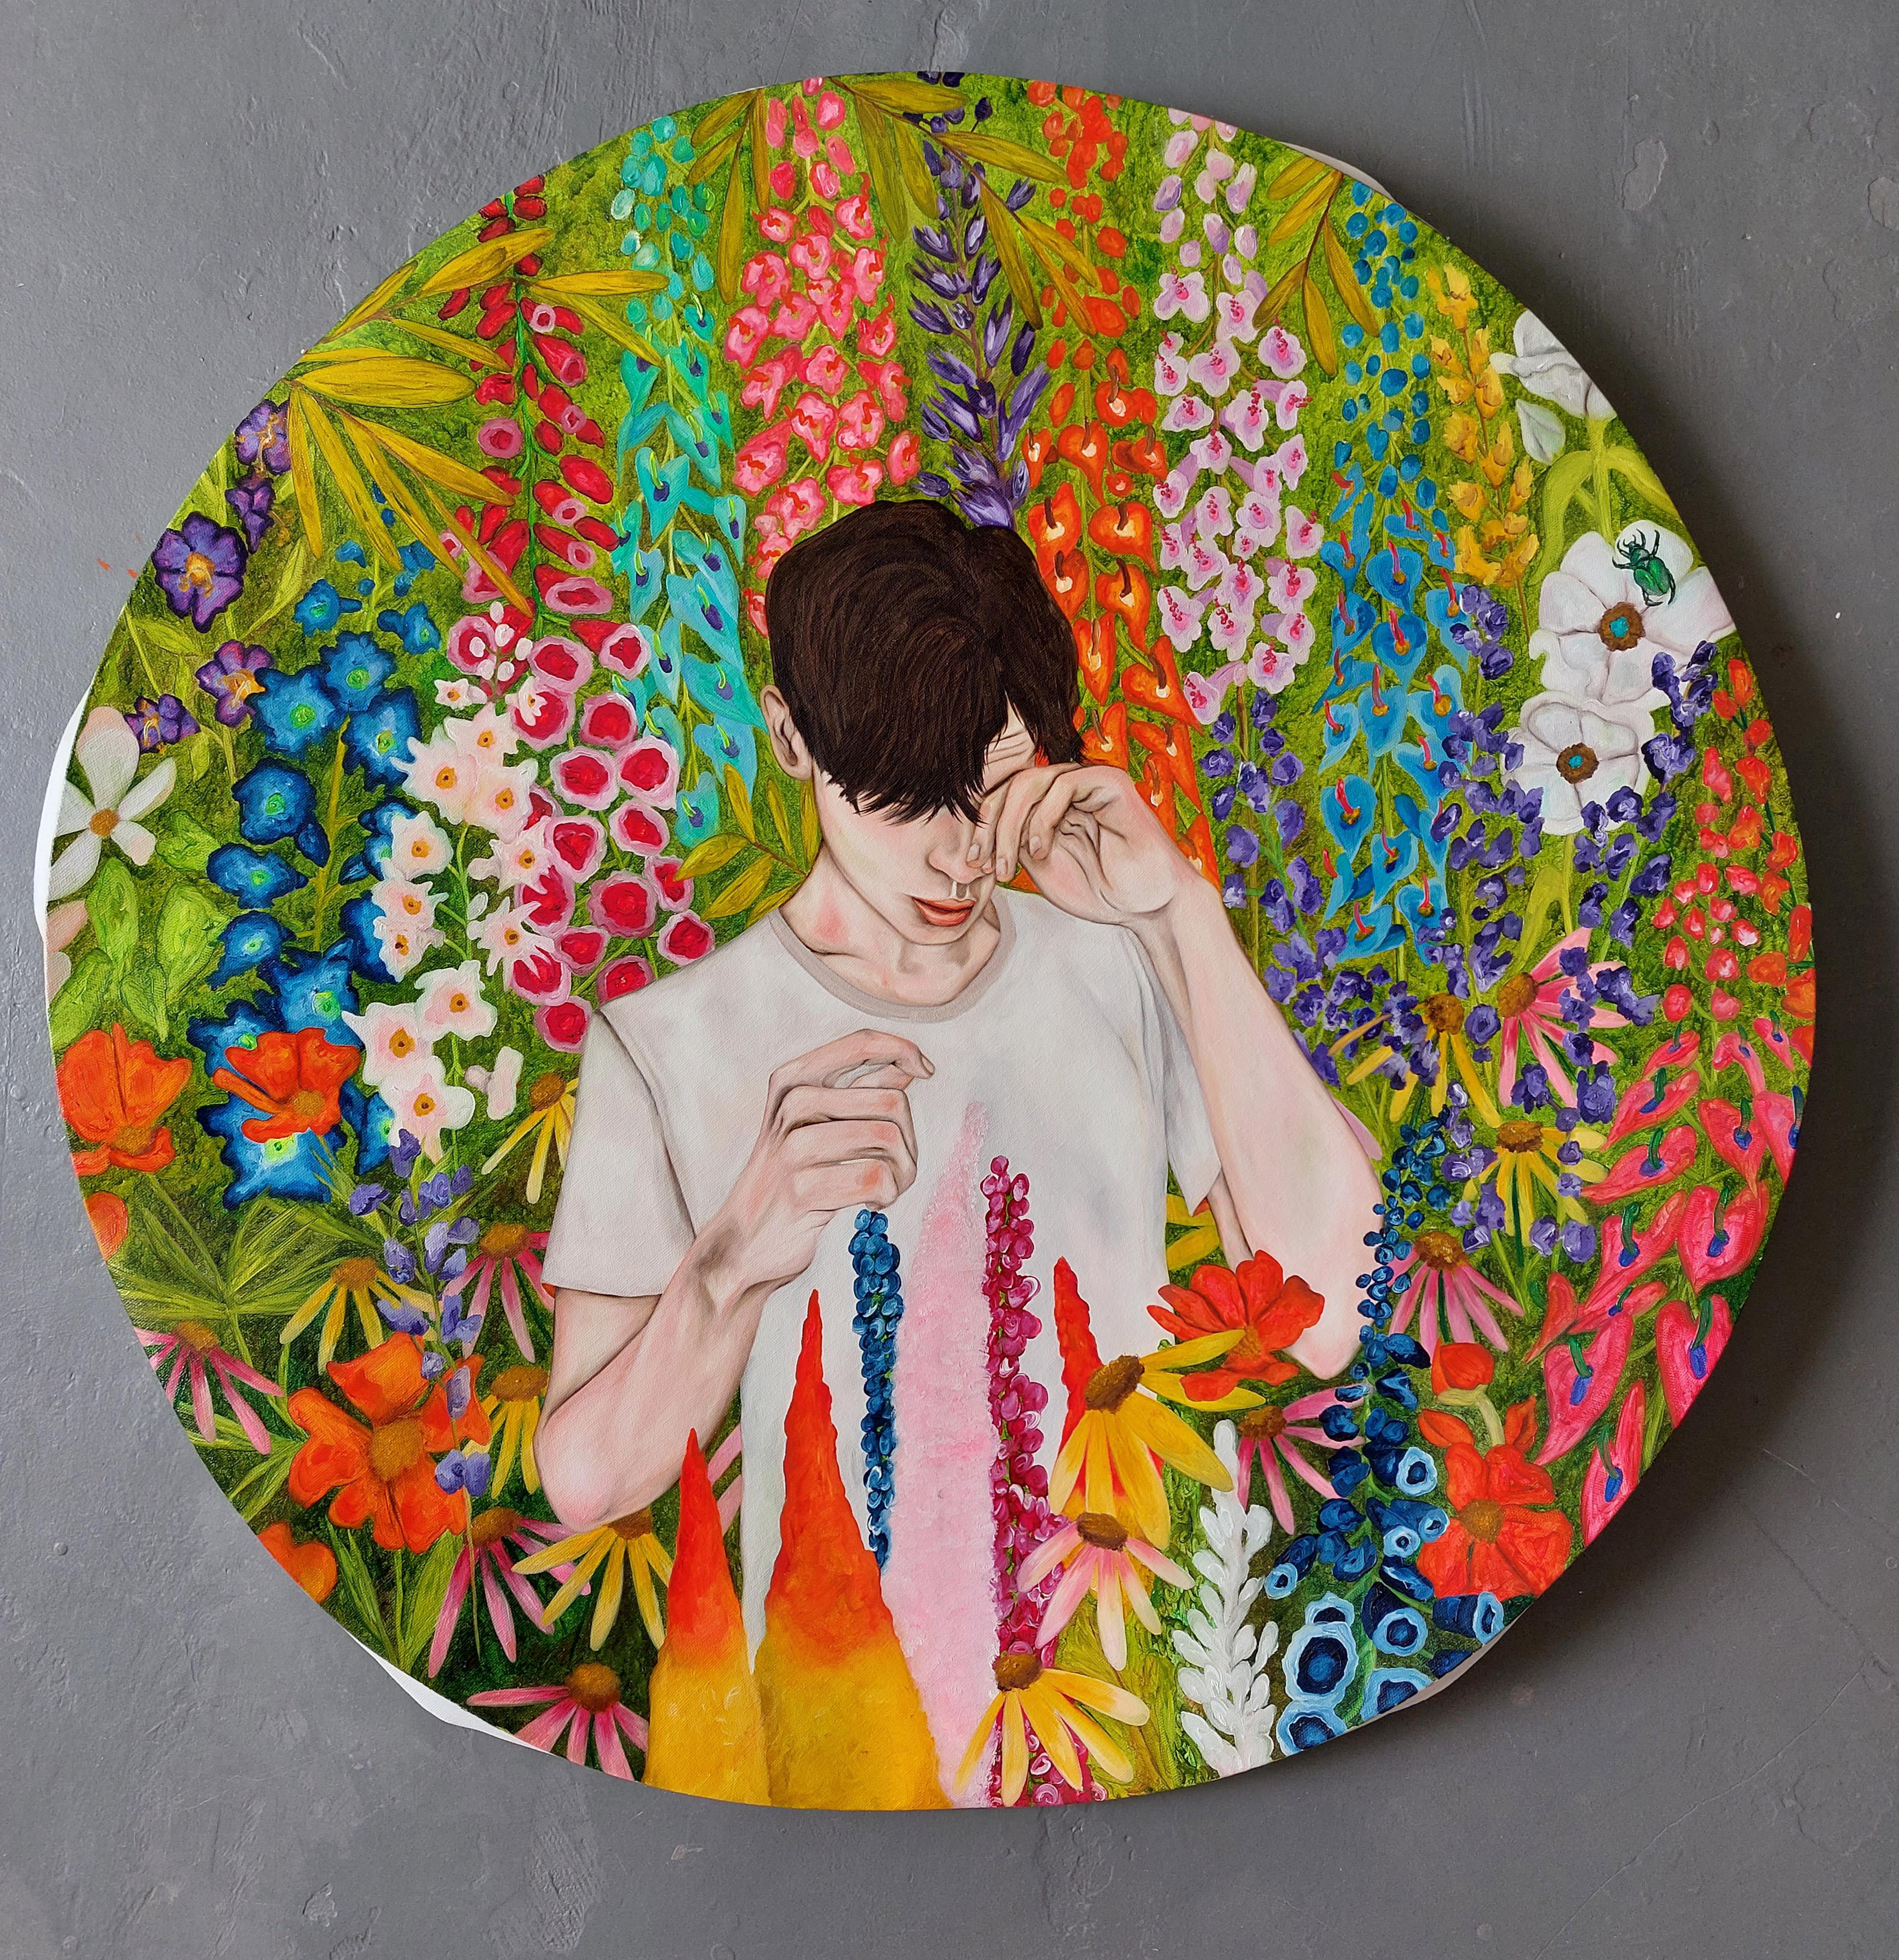 Le garçon avec une allergie de pollen, peinture figurative - Contemporain Painting par Ramonn Vieitez de Lima